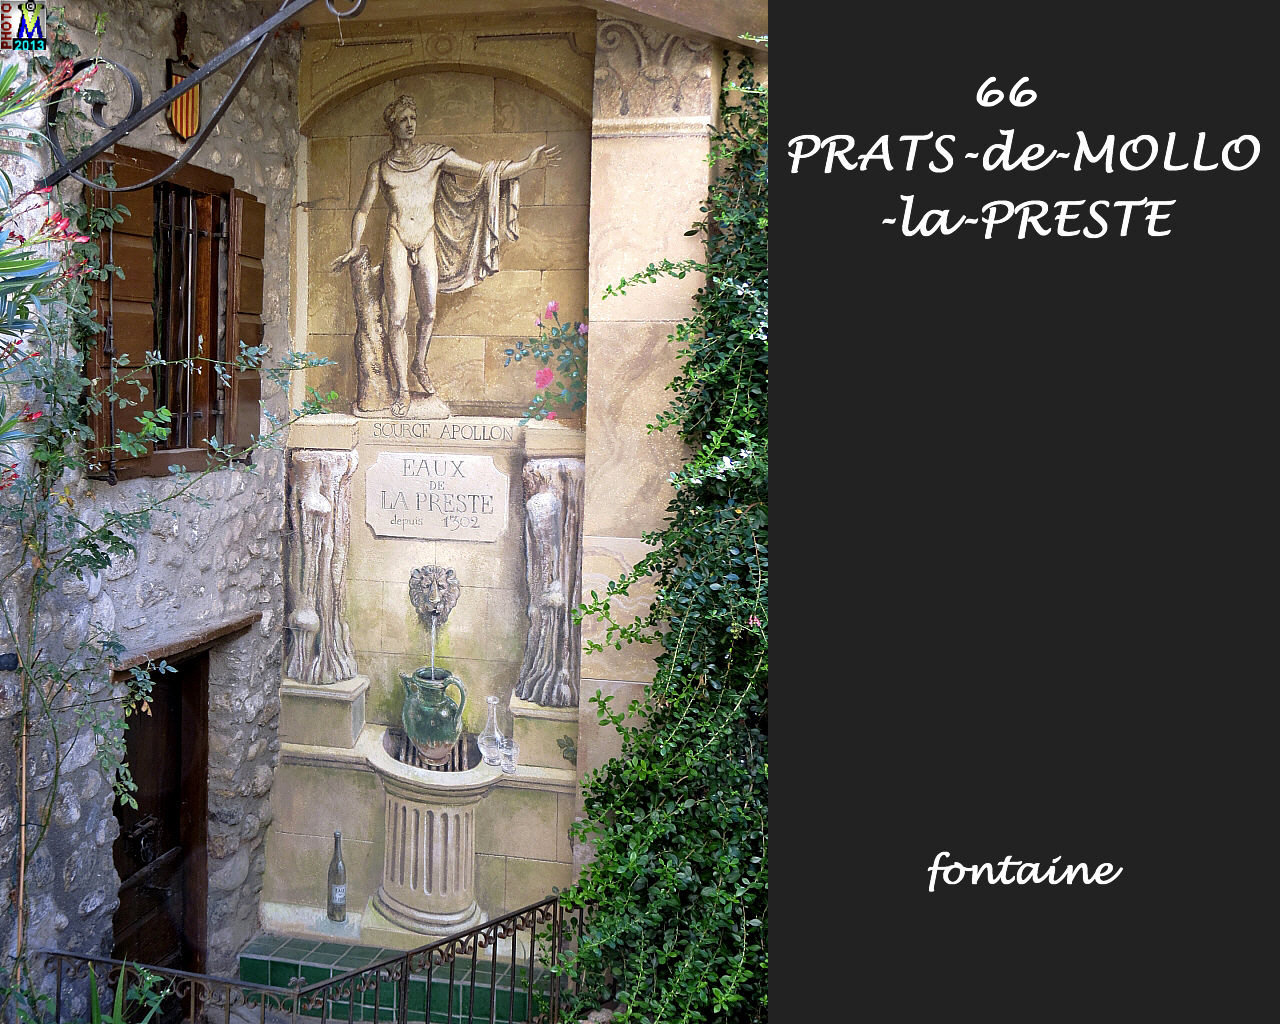 66PRATS-MOLLO-PRESTE_fontaine_100.jpg